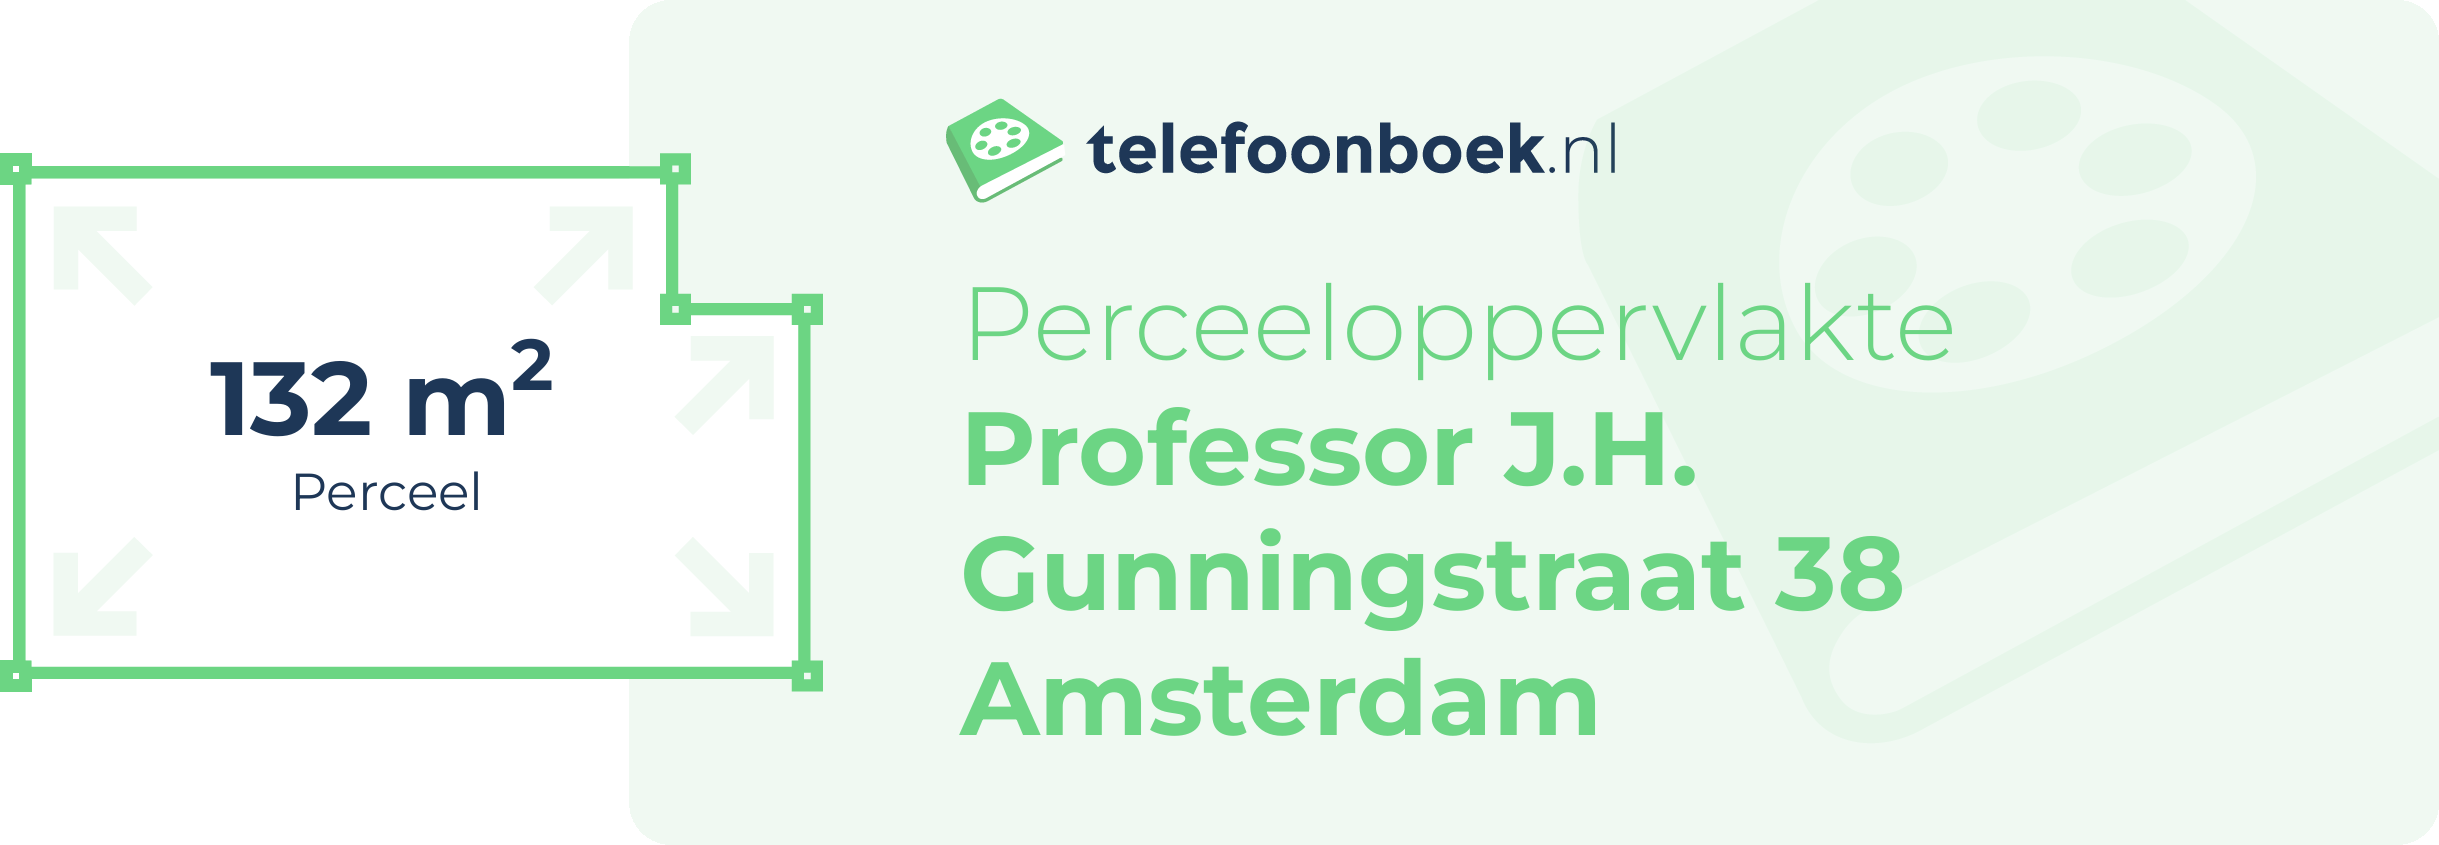 Perceeloppervlakte Professor J.H. Gunningstraat 38 Amsterdam